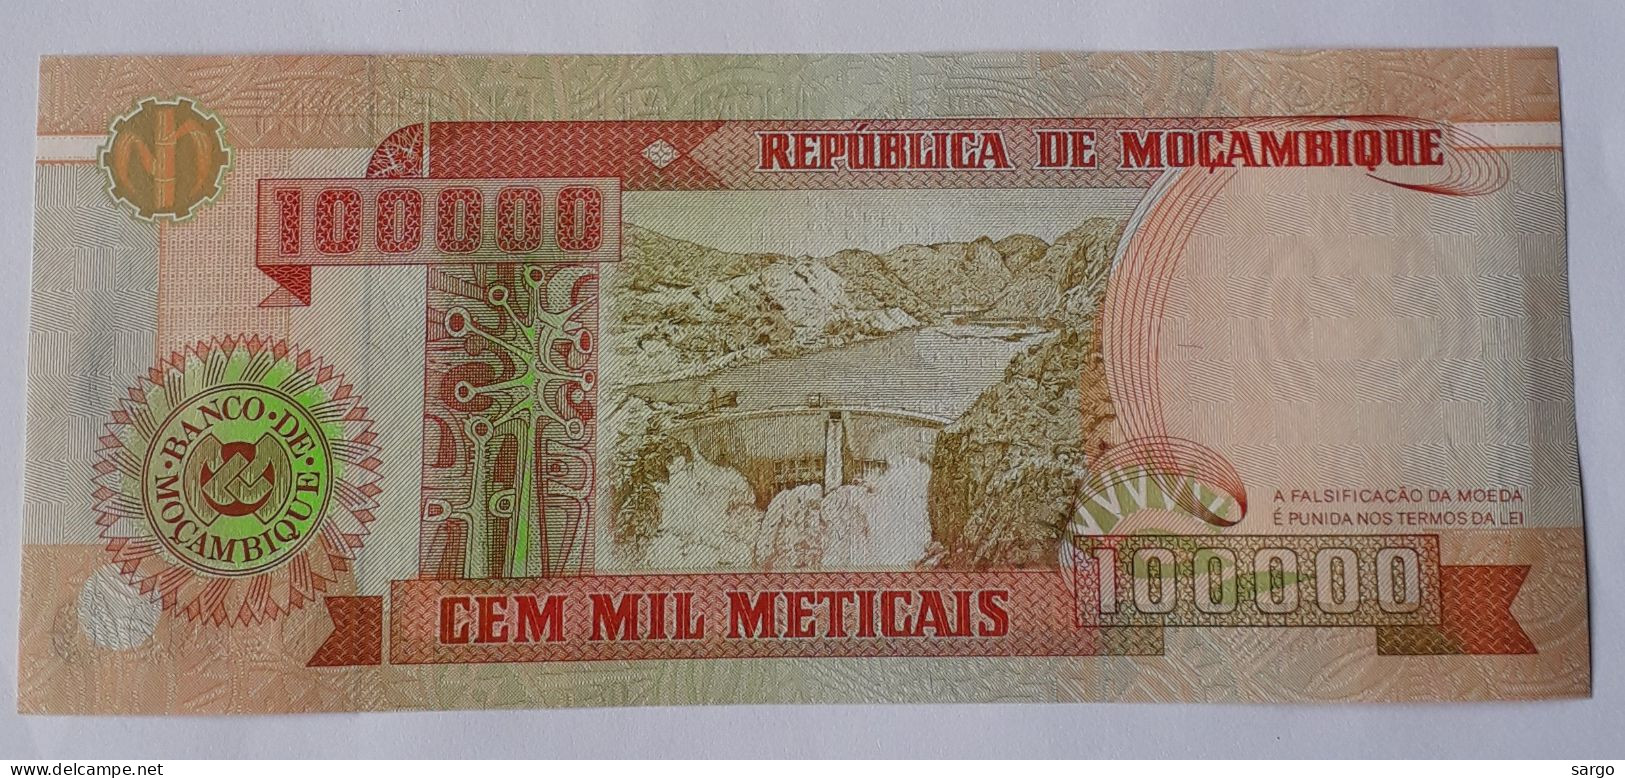 MOZAMBIQUE - 100.000 METICAIS - P 139  (1993)  - UNC - BANKNOTES - PAPER MONEY - CARTAMONETA - - Moçambique